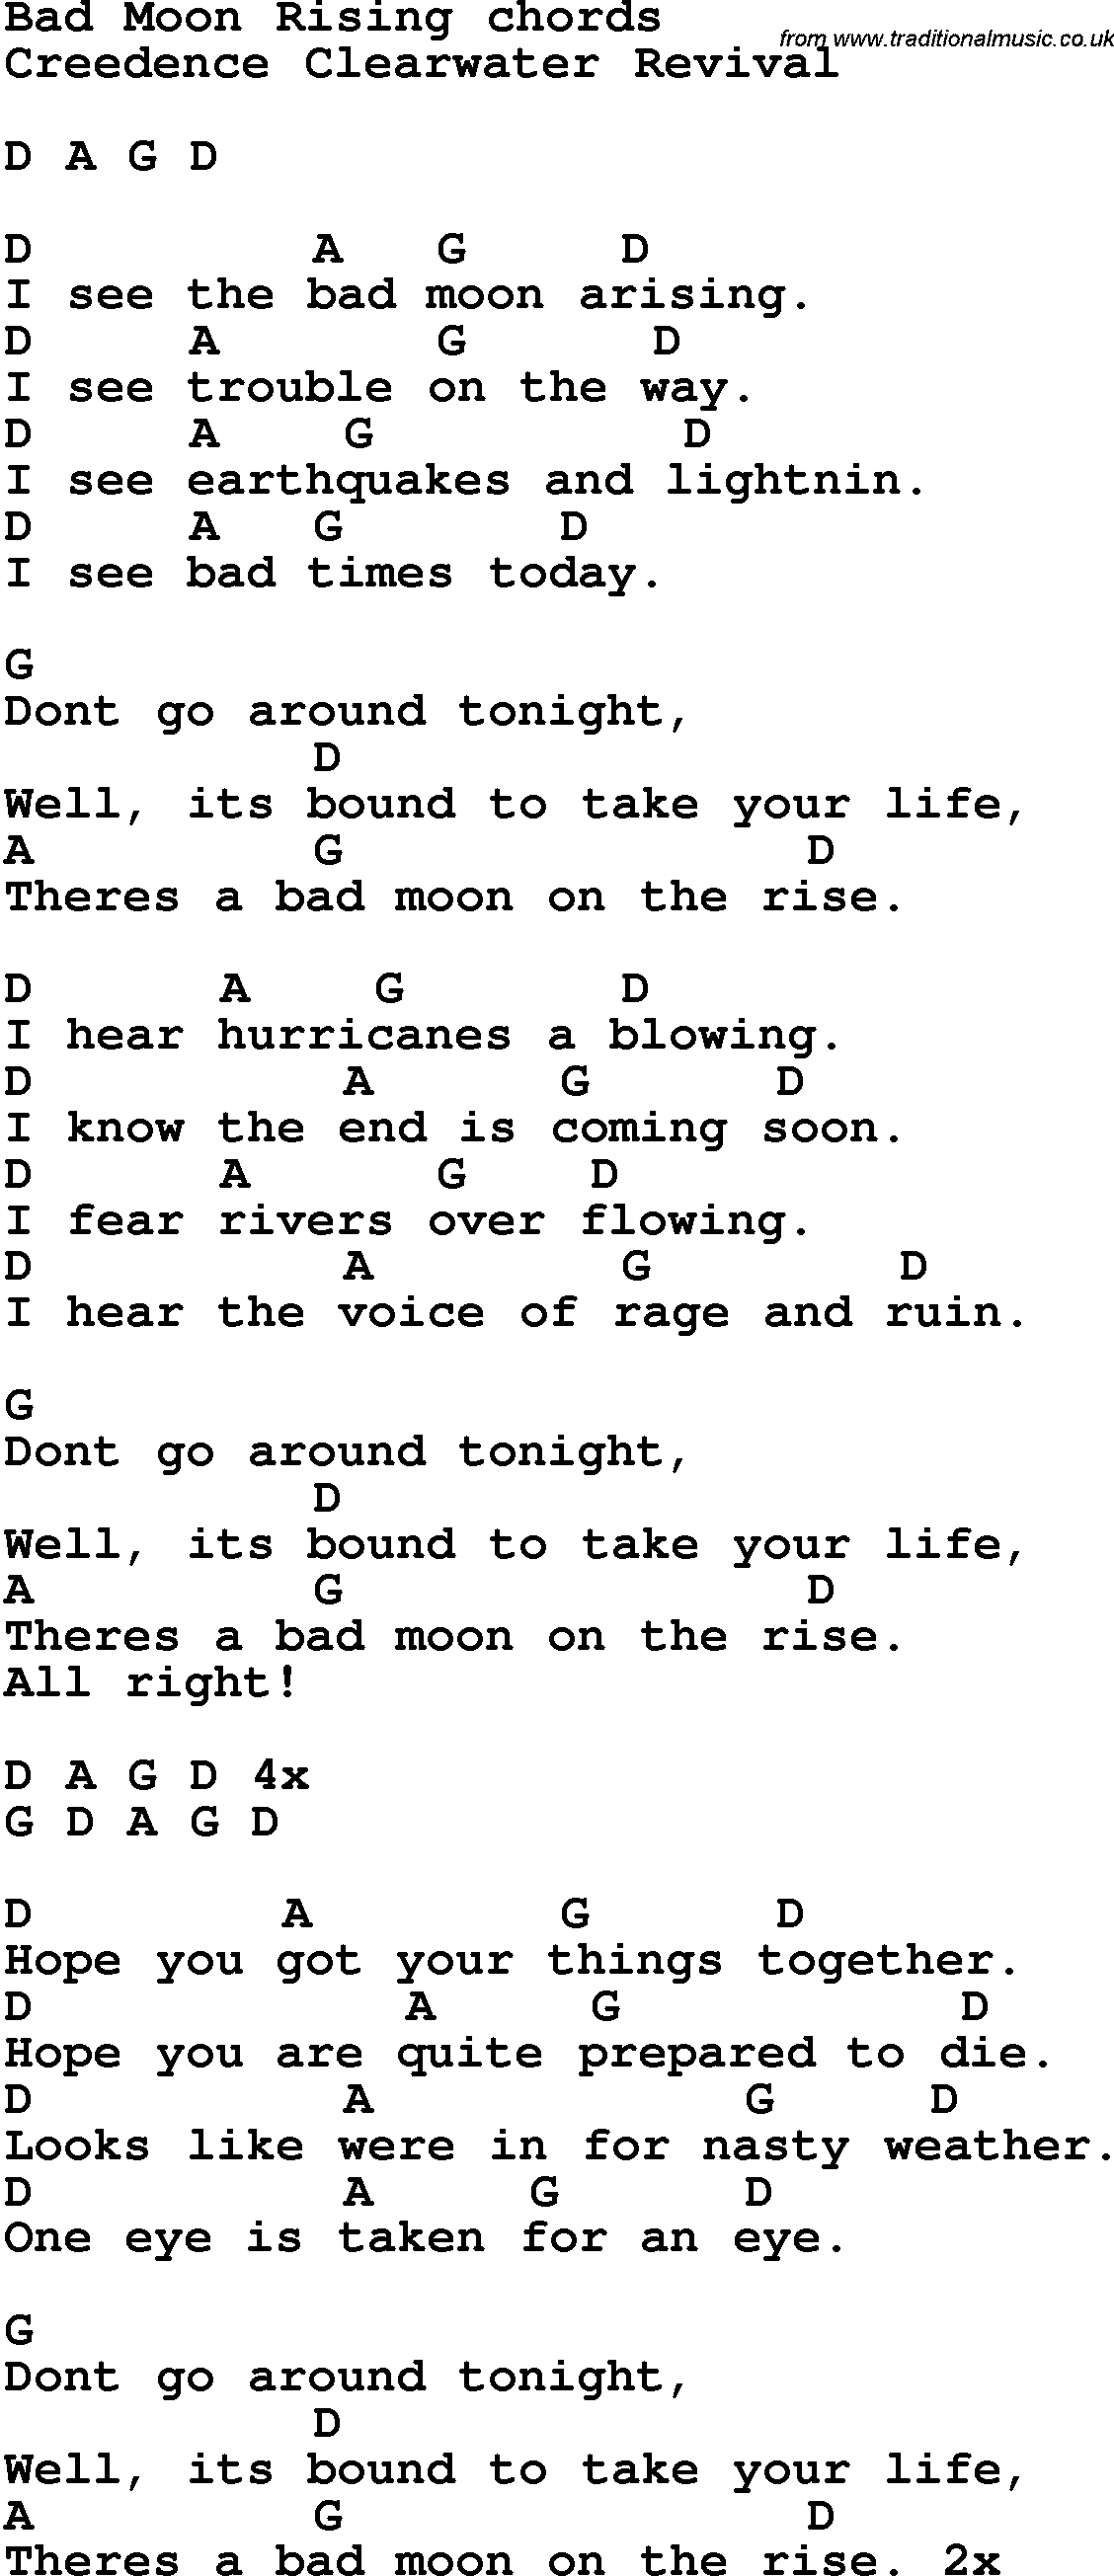 Bad Moon Rising Chords Song Lyrics With Guitar Chords For Bad Moon Rising